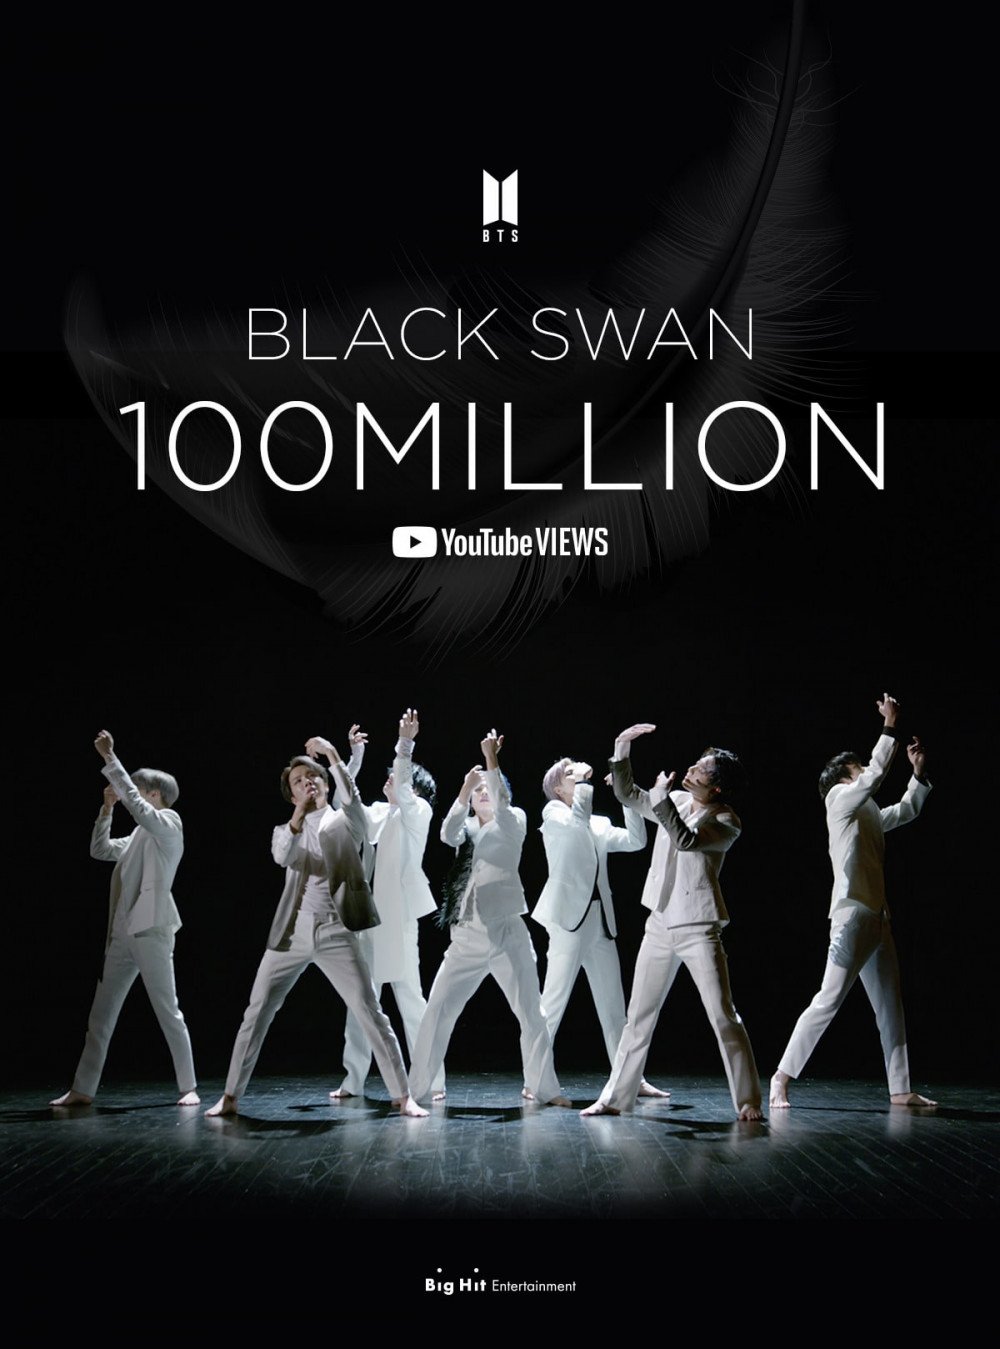 防弹少年团凭借《Black Swan》再添点击突破一亿MV